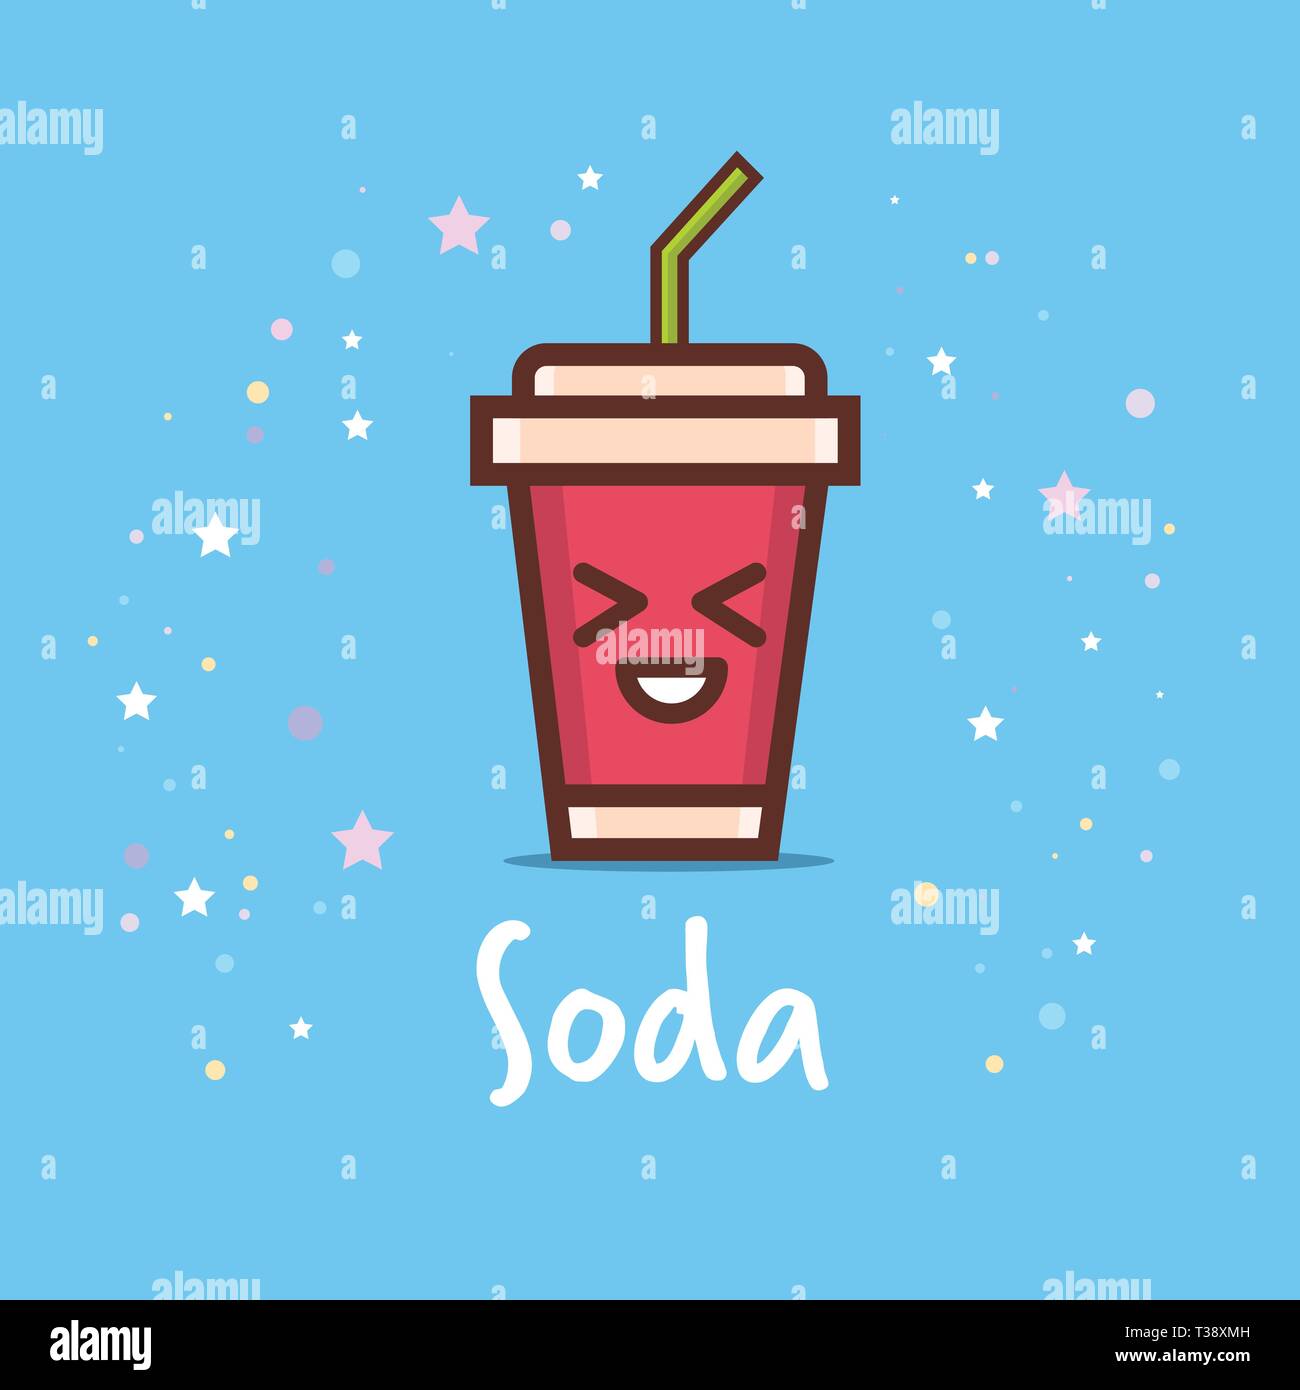 Süße Tasse soda Cartoon comic Charakter mit lächelnden Gesicht glücklich Emoji kawaii Stil frischen Drink Konzept Vector Illustration Stock Vektor